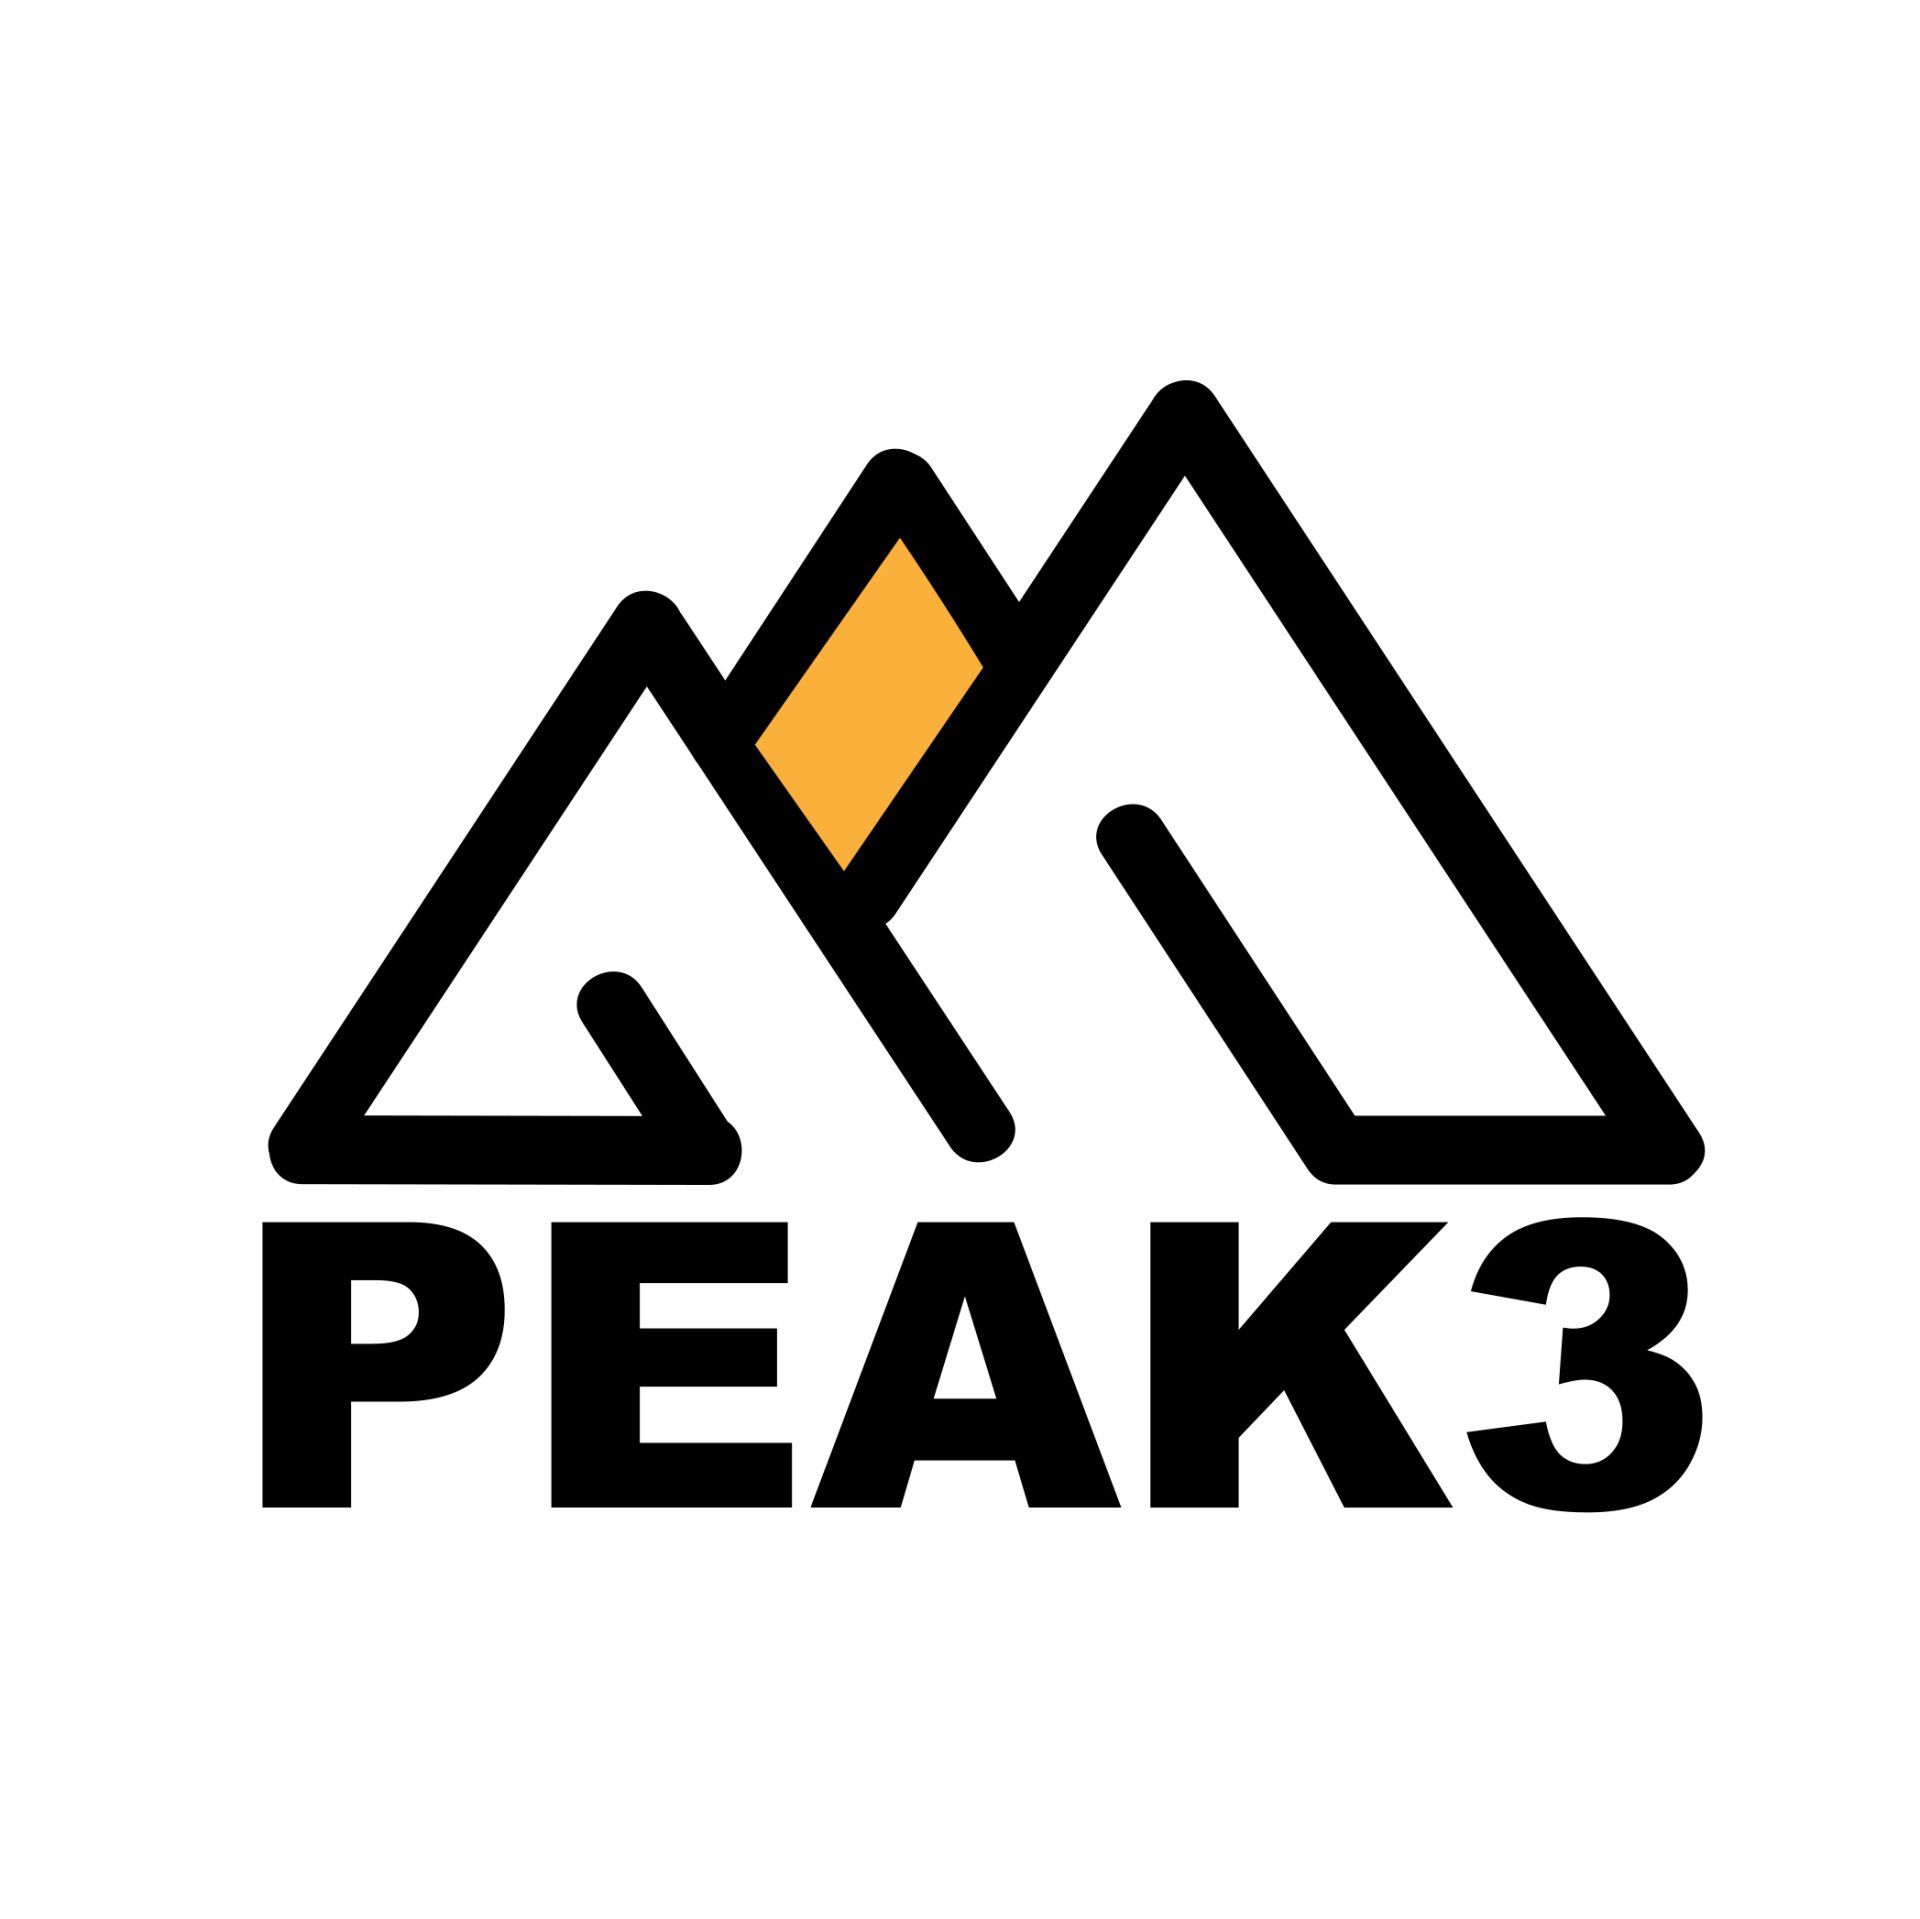 Peak 3